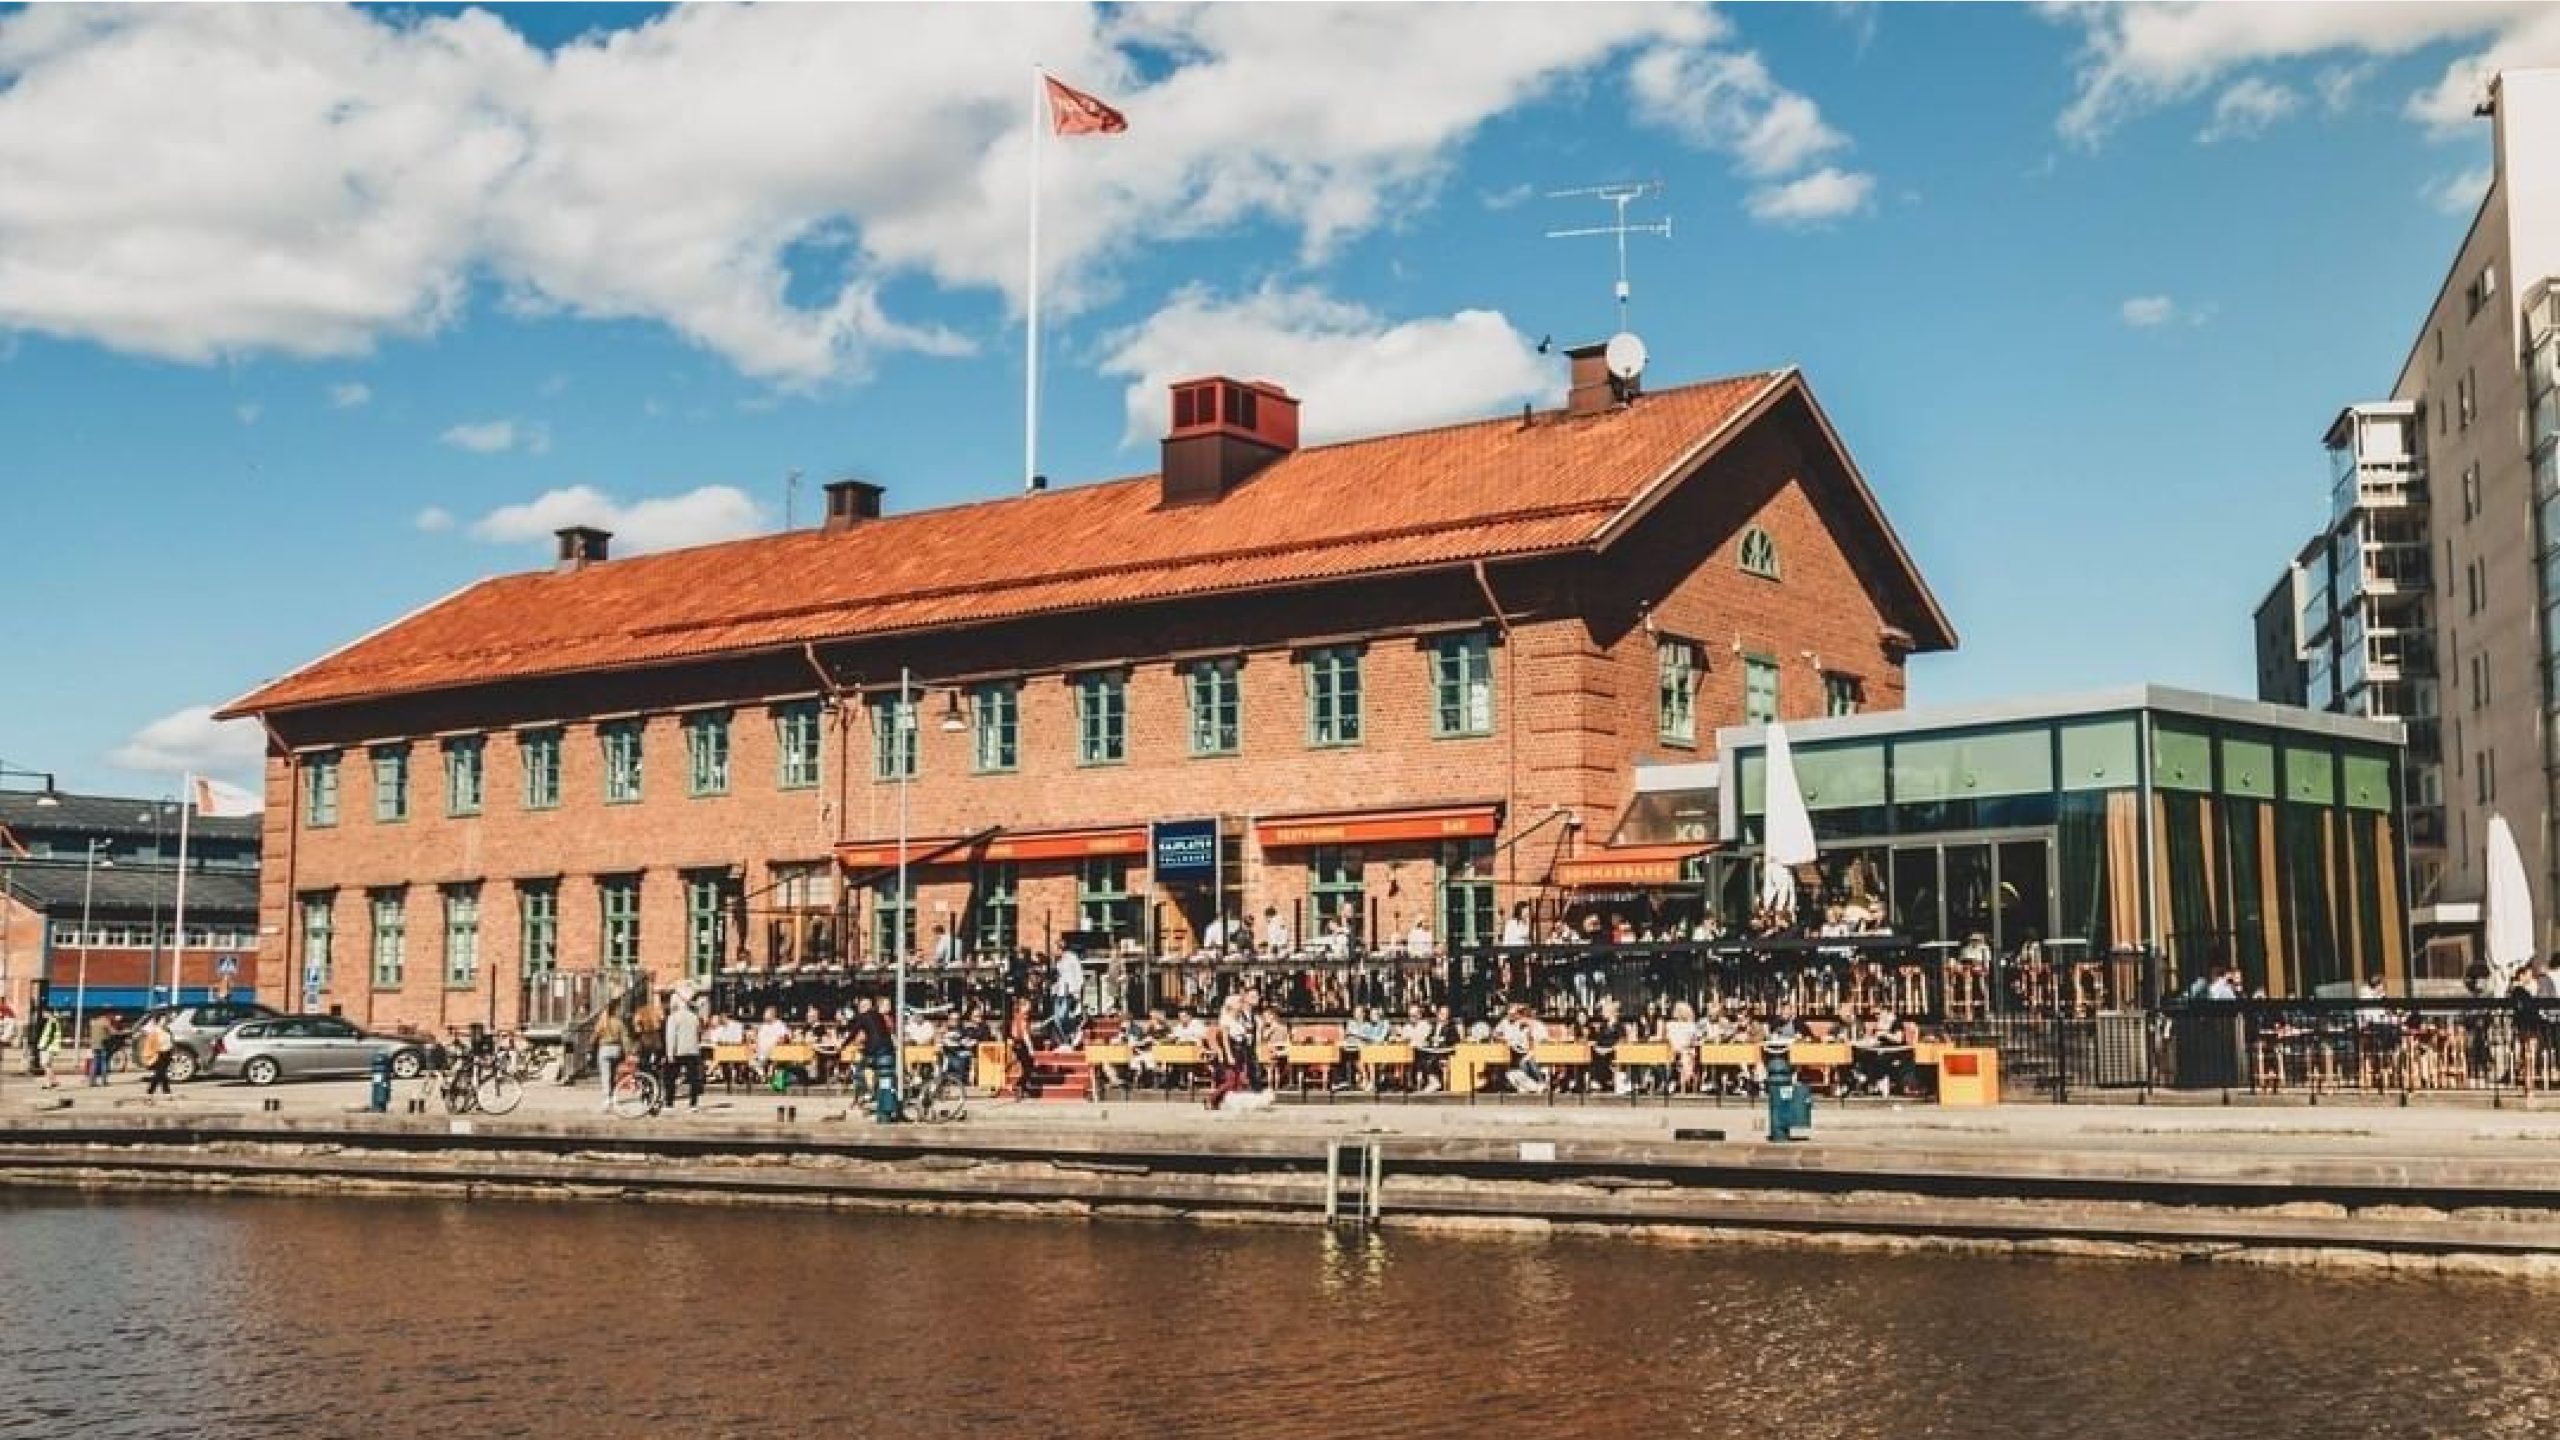 GUIDE: Restauranger och caféer med utsikt i Västerås